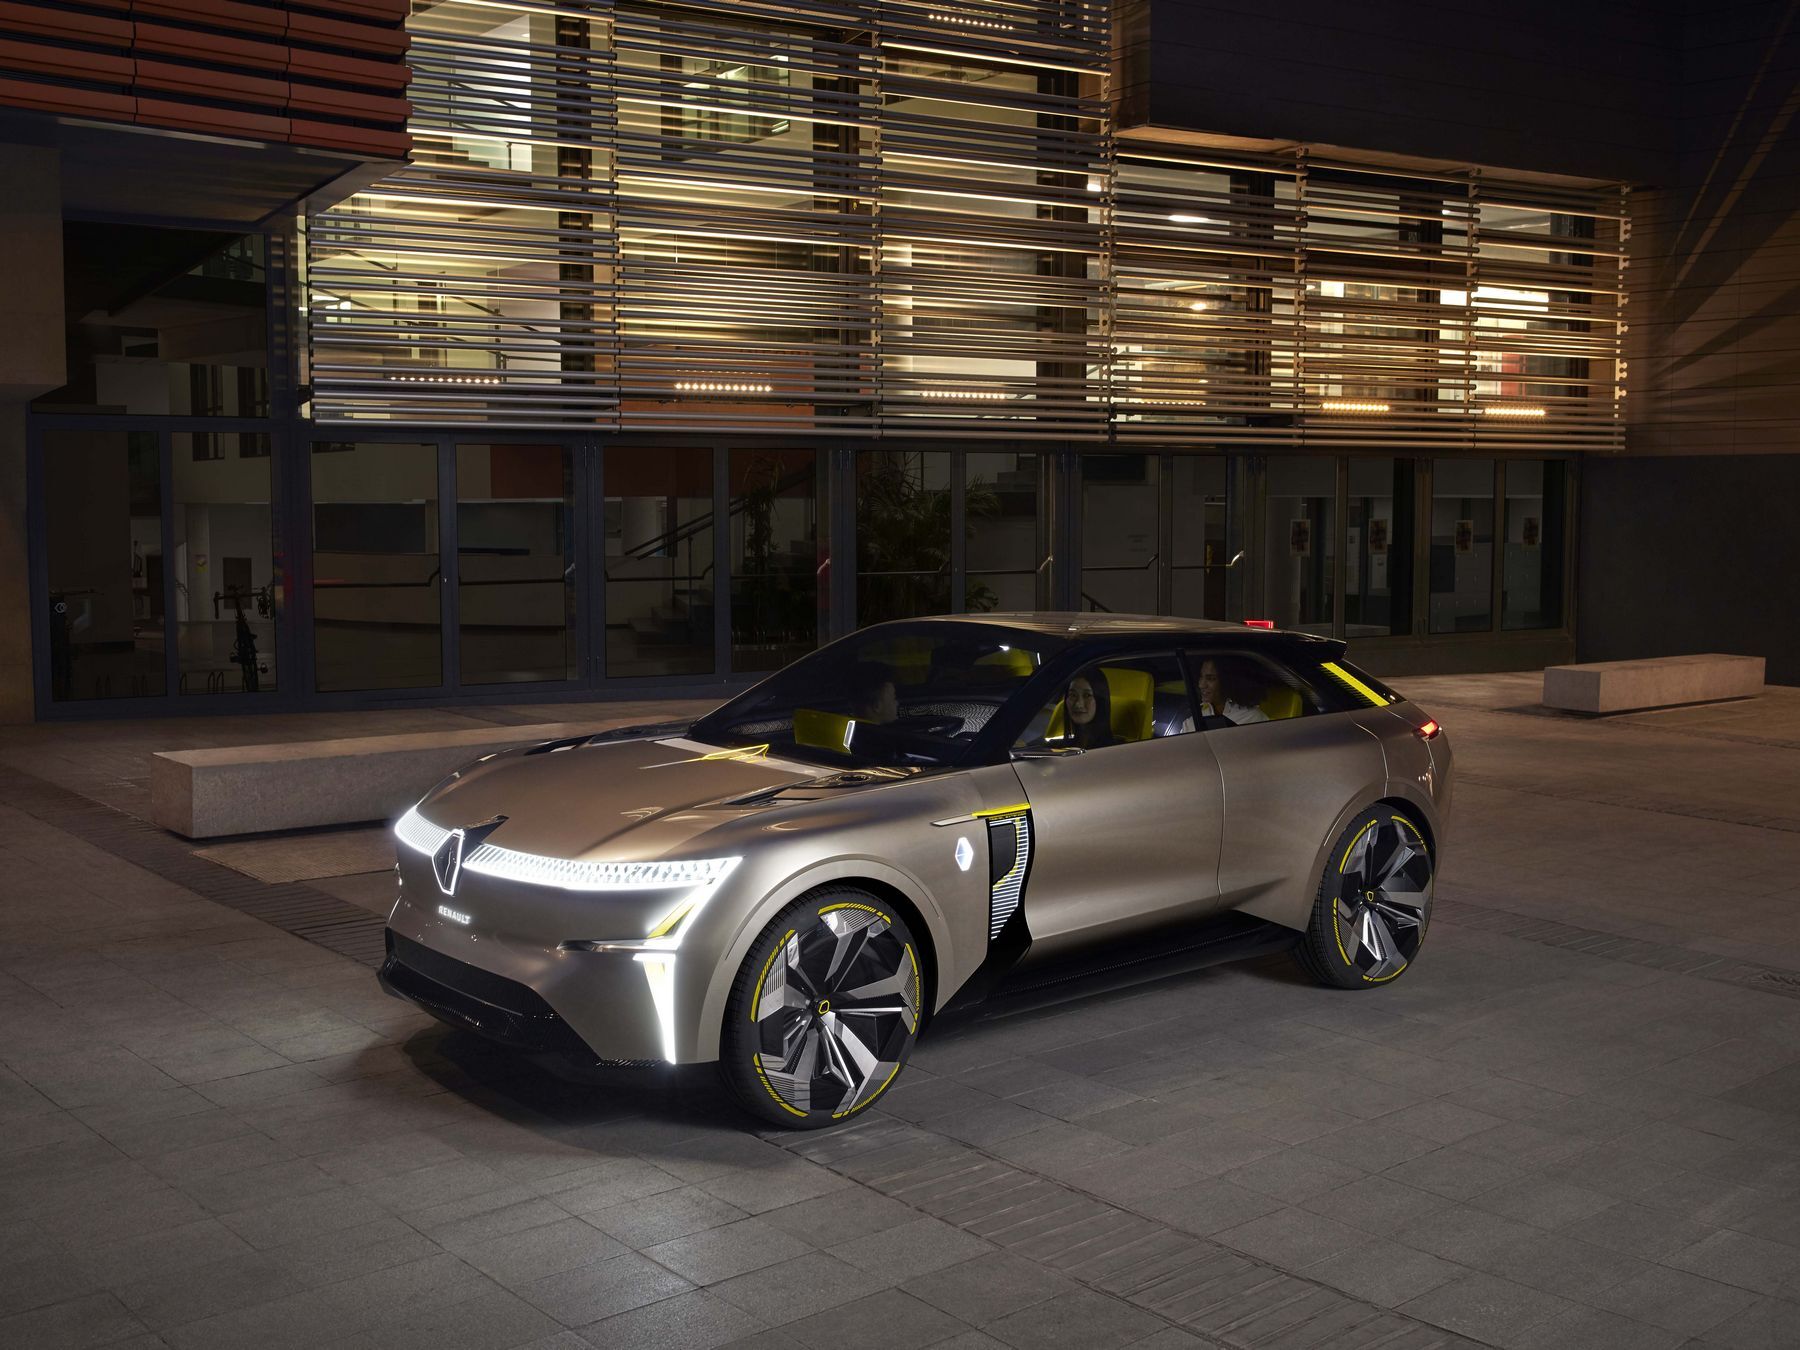 Renault dévoile un concept-car électrique modulable, capable de passer de 40 à 90 kWh